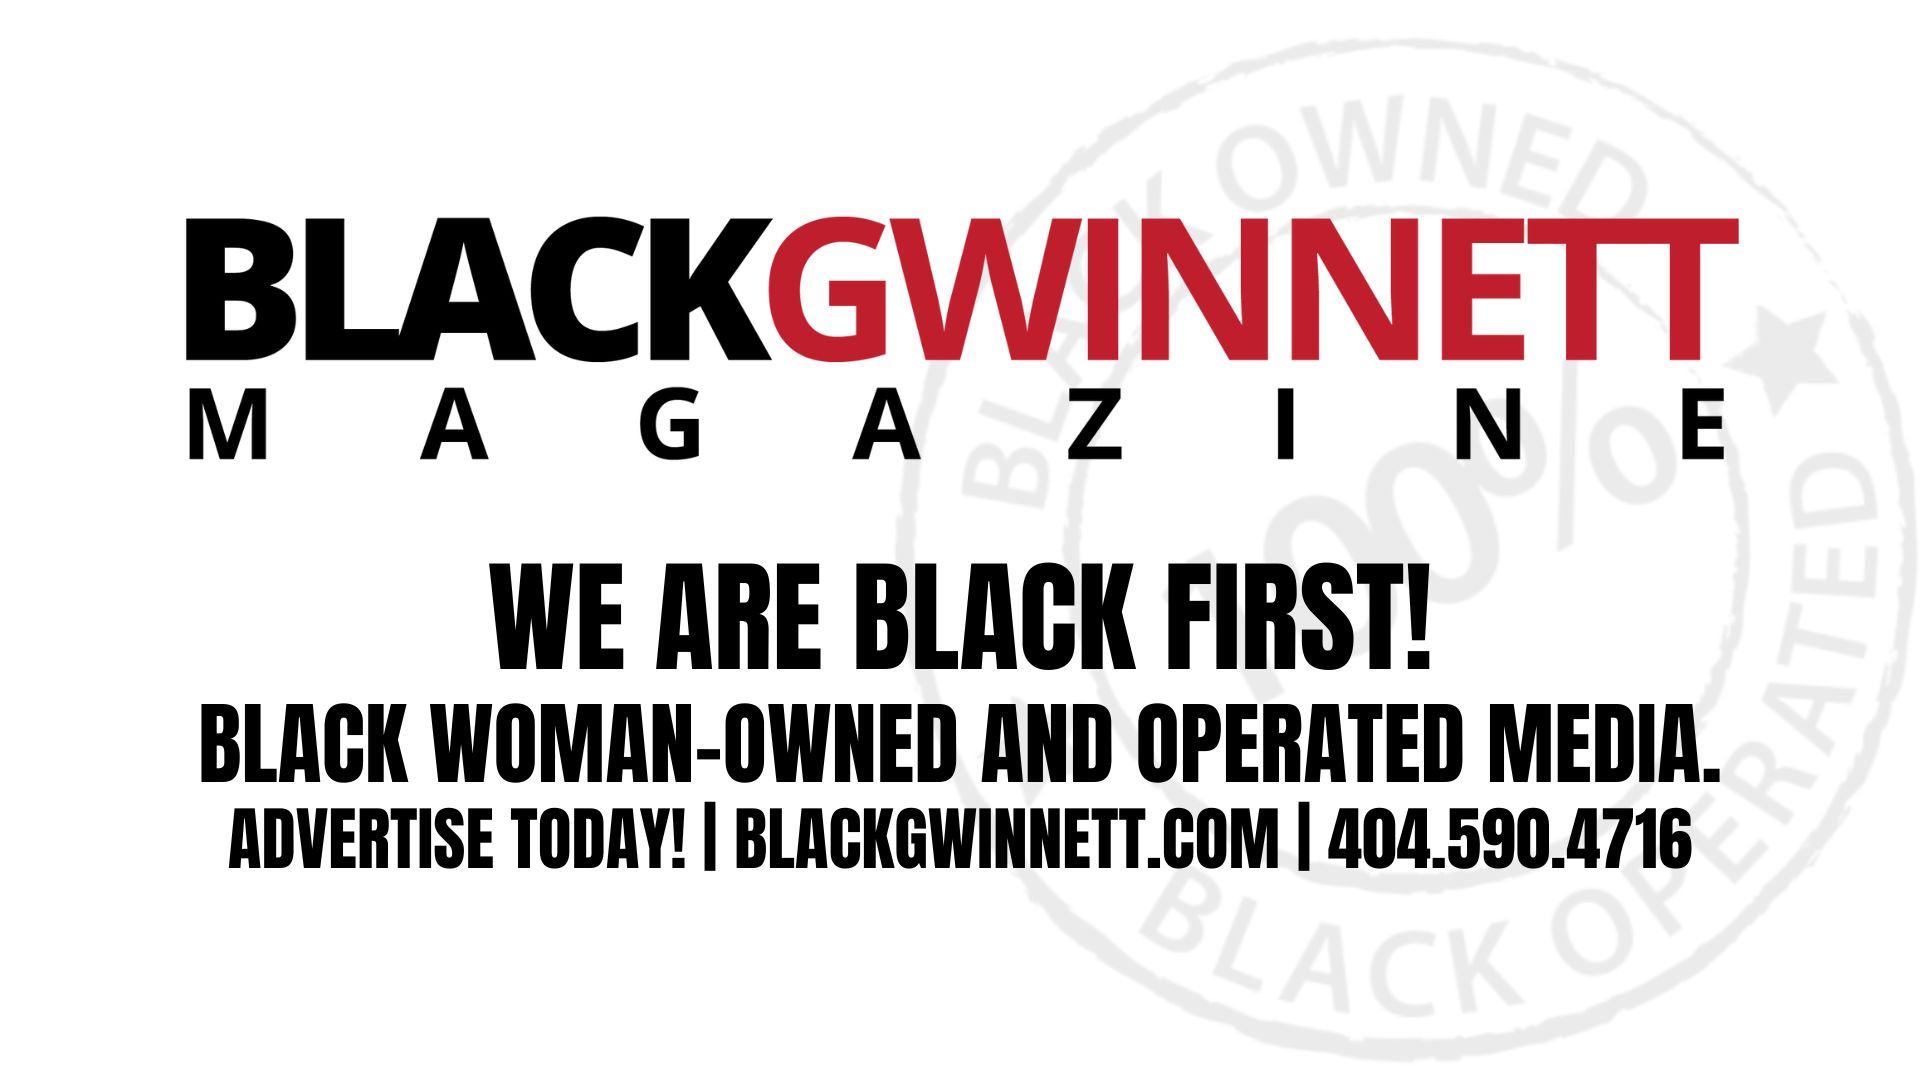 Black Gwinnett Magazine :: Black-Owned, Woman-Owned Media